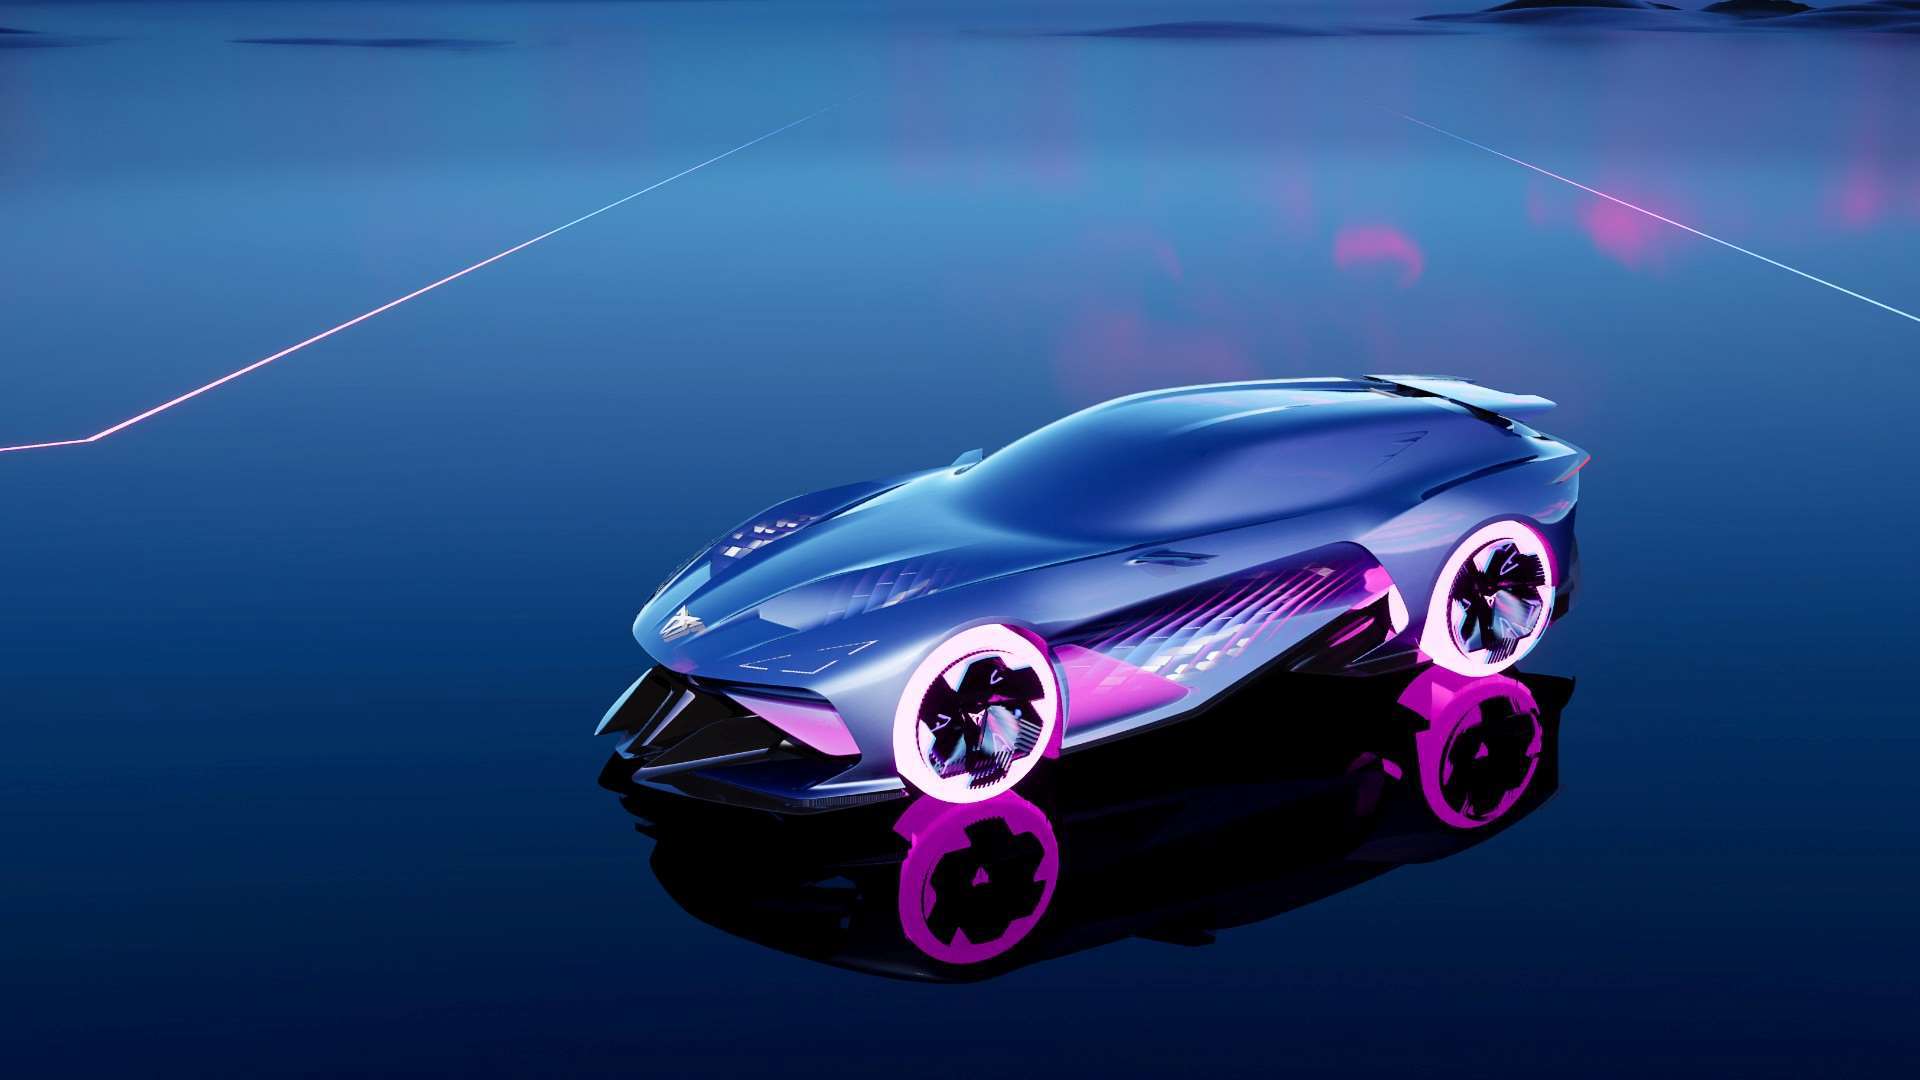 ccupra-unveils-the-darkrebel-a-fully-virtual-sports-car-with-unfiltered-cupra-dna_01_hq.jpg